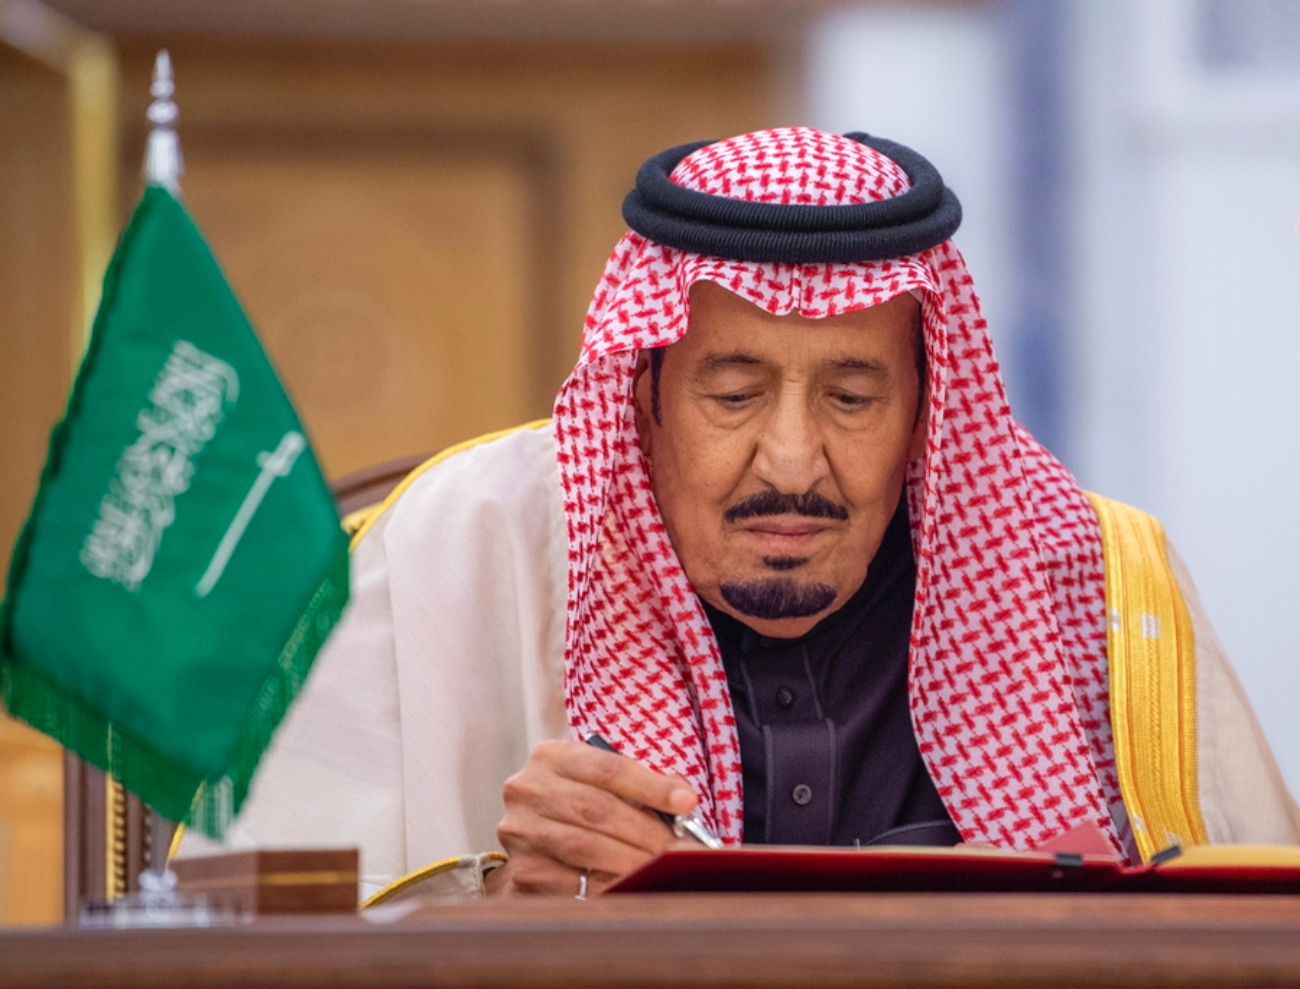 Σαουδική Αραβία: Έχουν σχεδόν διπλασιαστεί οι εκτελέσεις επί της ηγεσίας του βασιλιά Σαλμάν, λέει ΜΚΟ